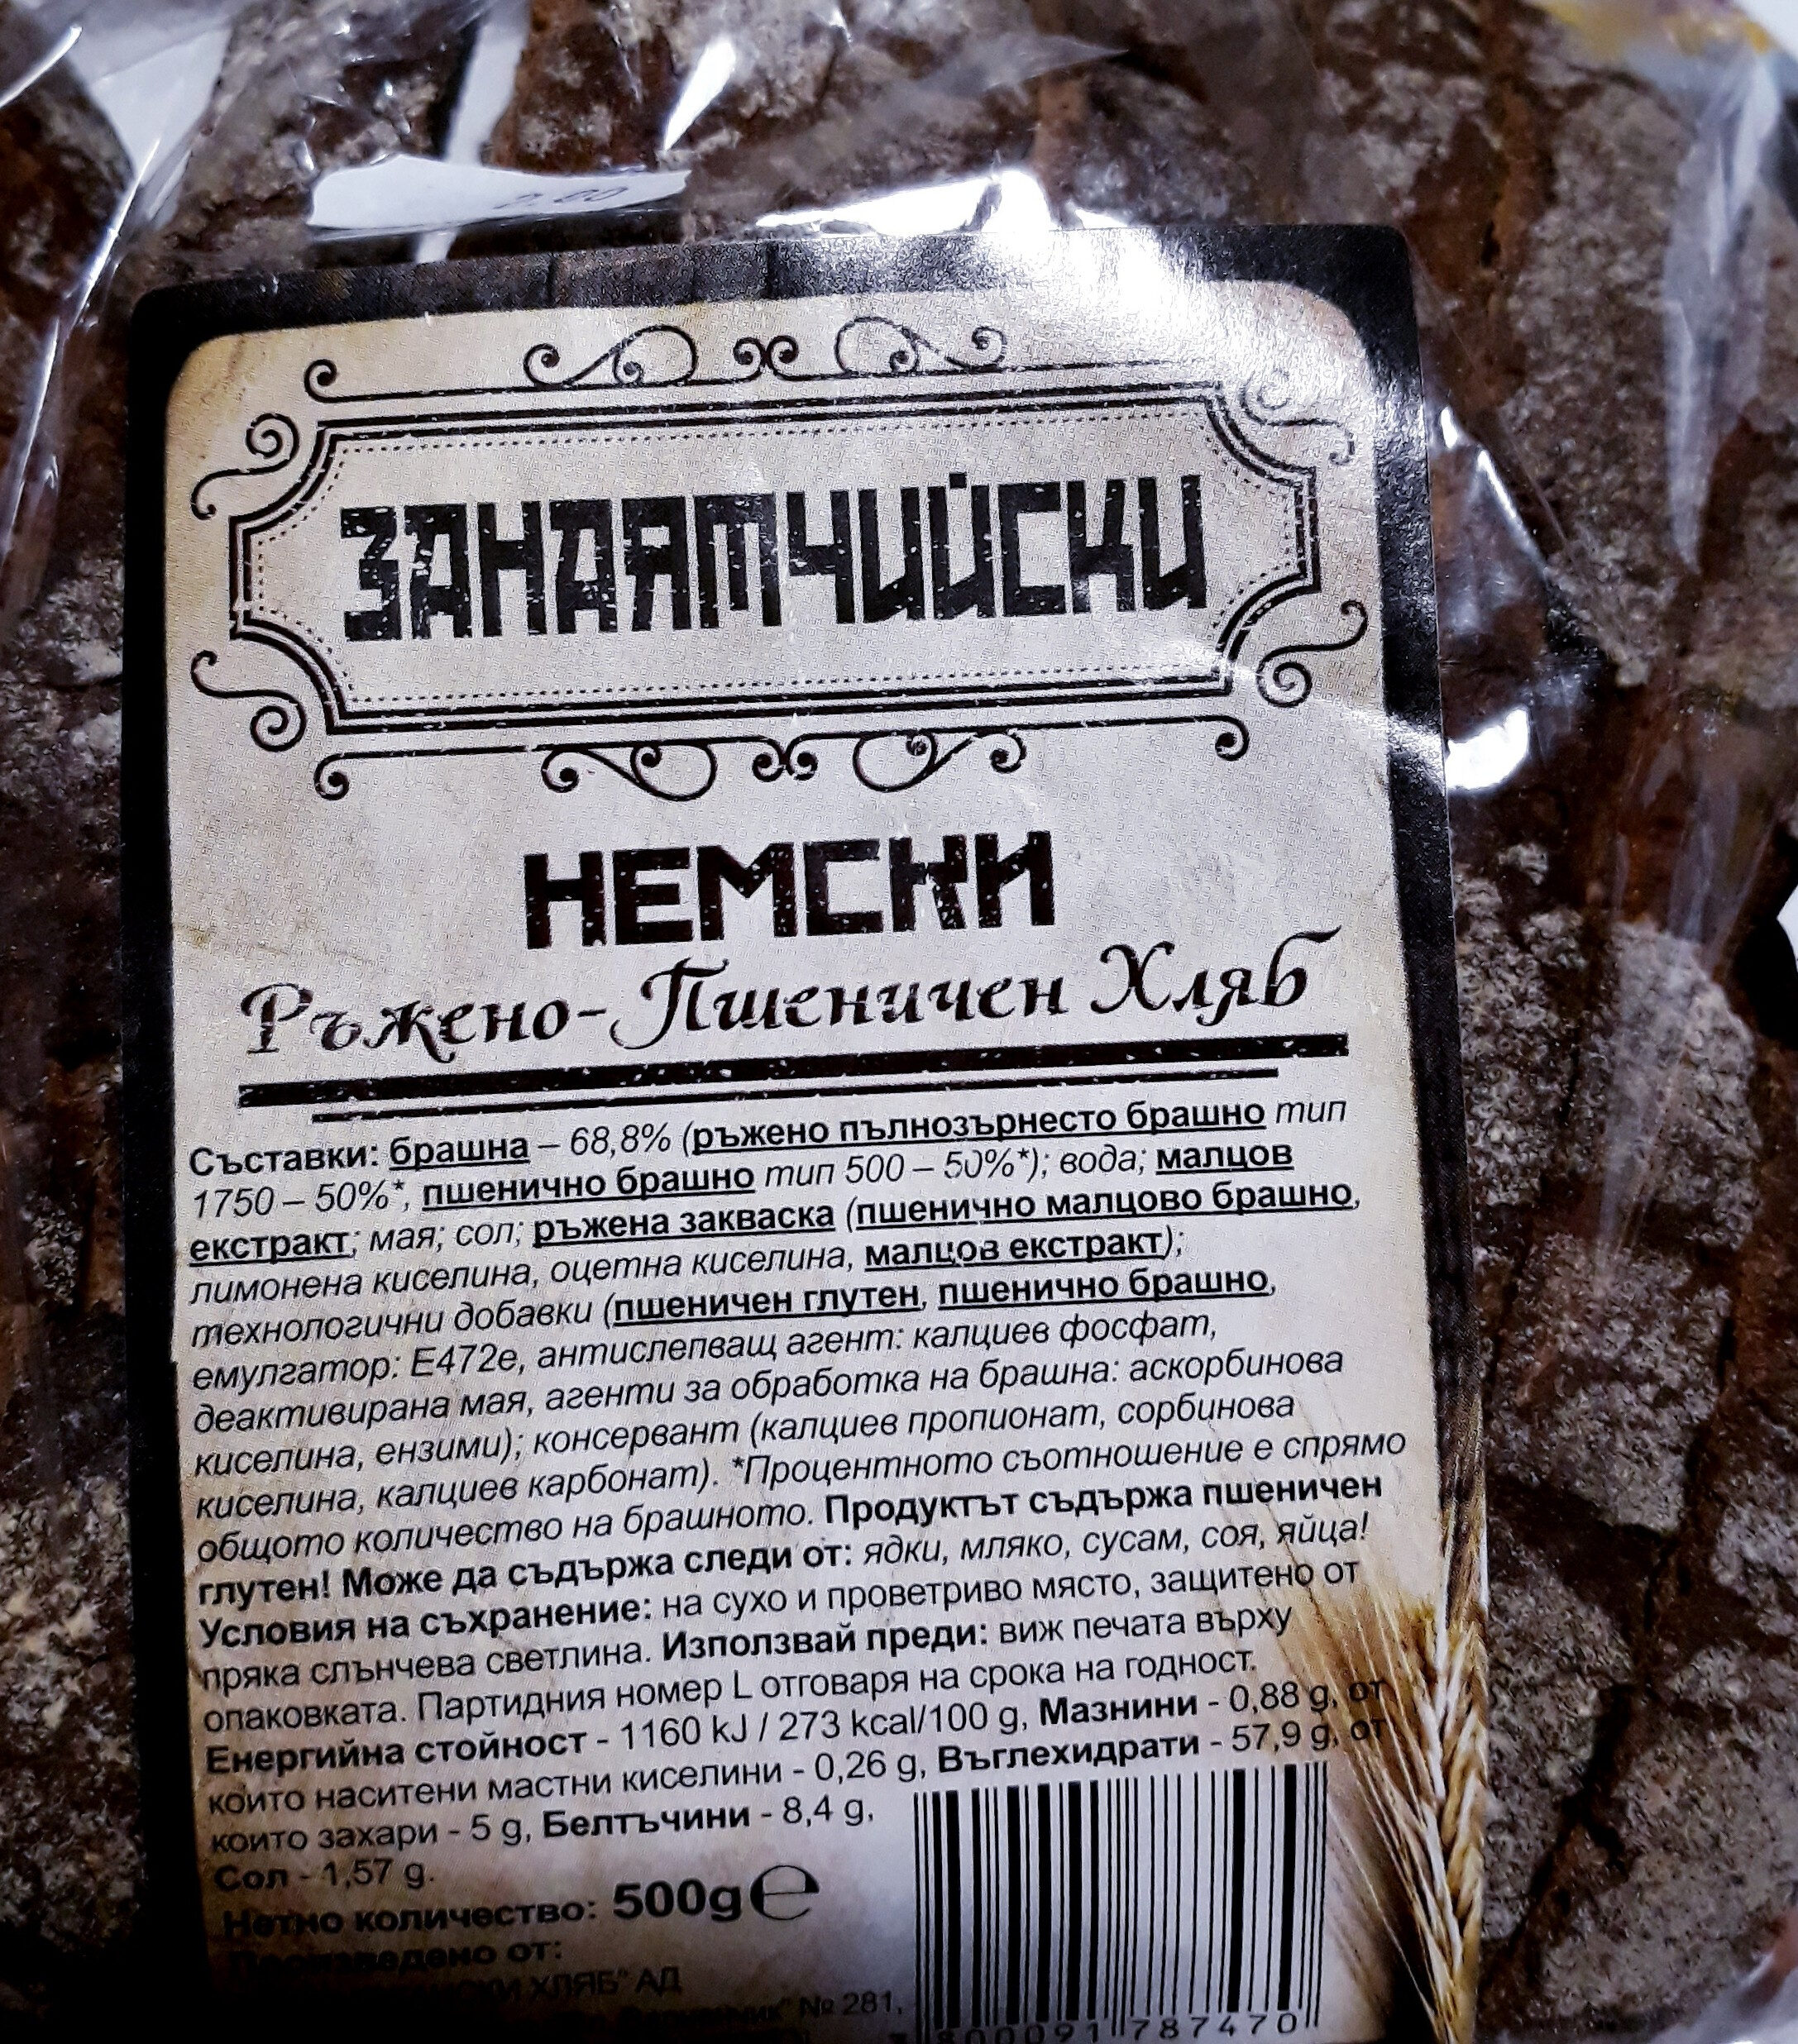 Немски ръжено-пшеничен хляб - نتاج - bg